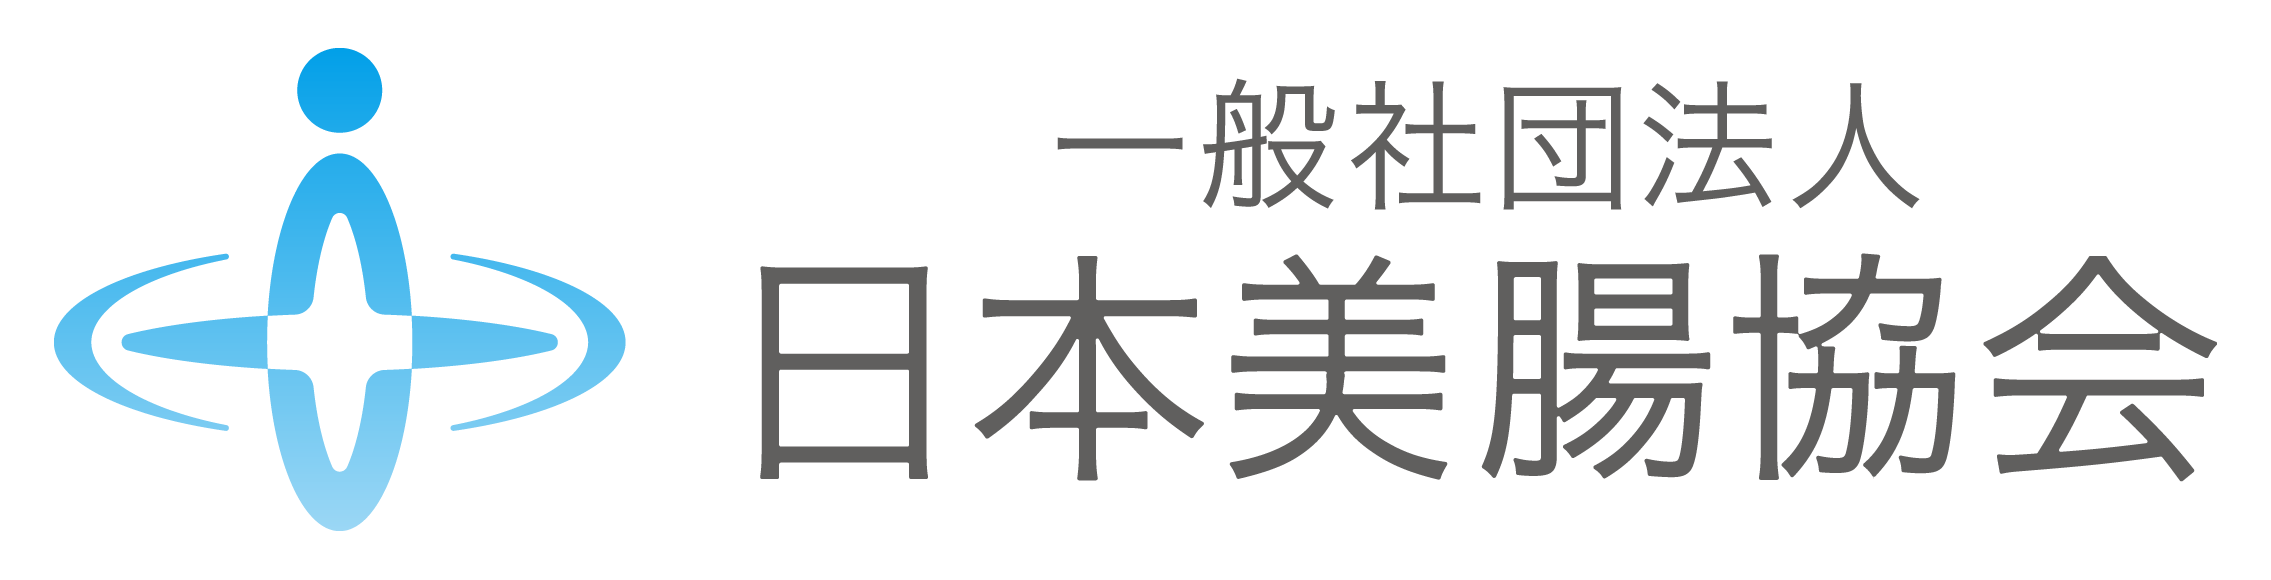 一般社団法人日本美腸協会